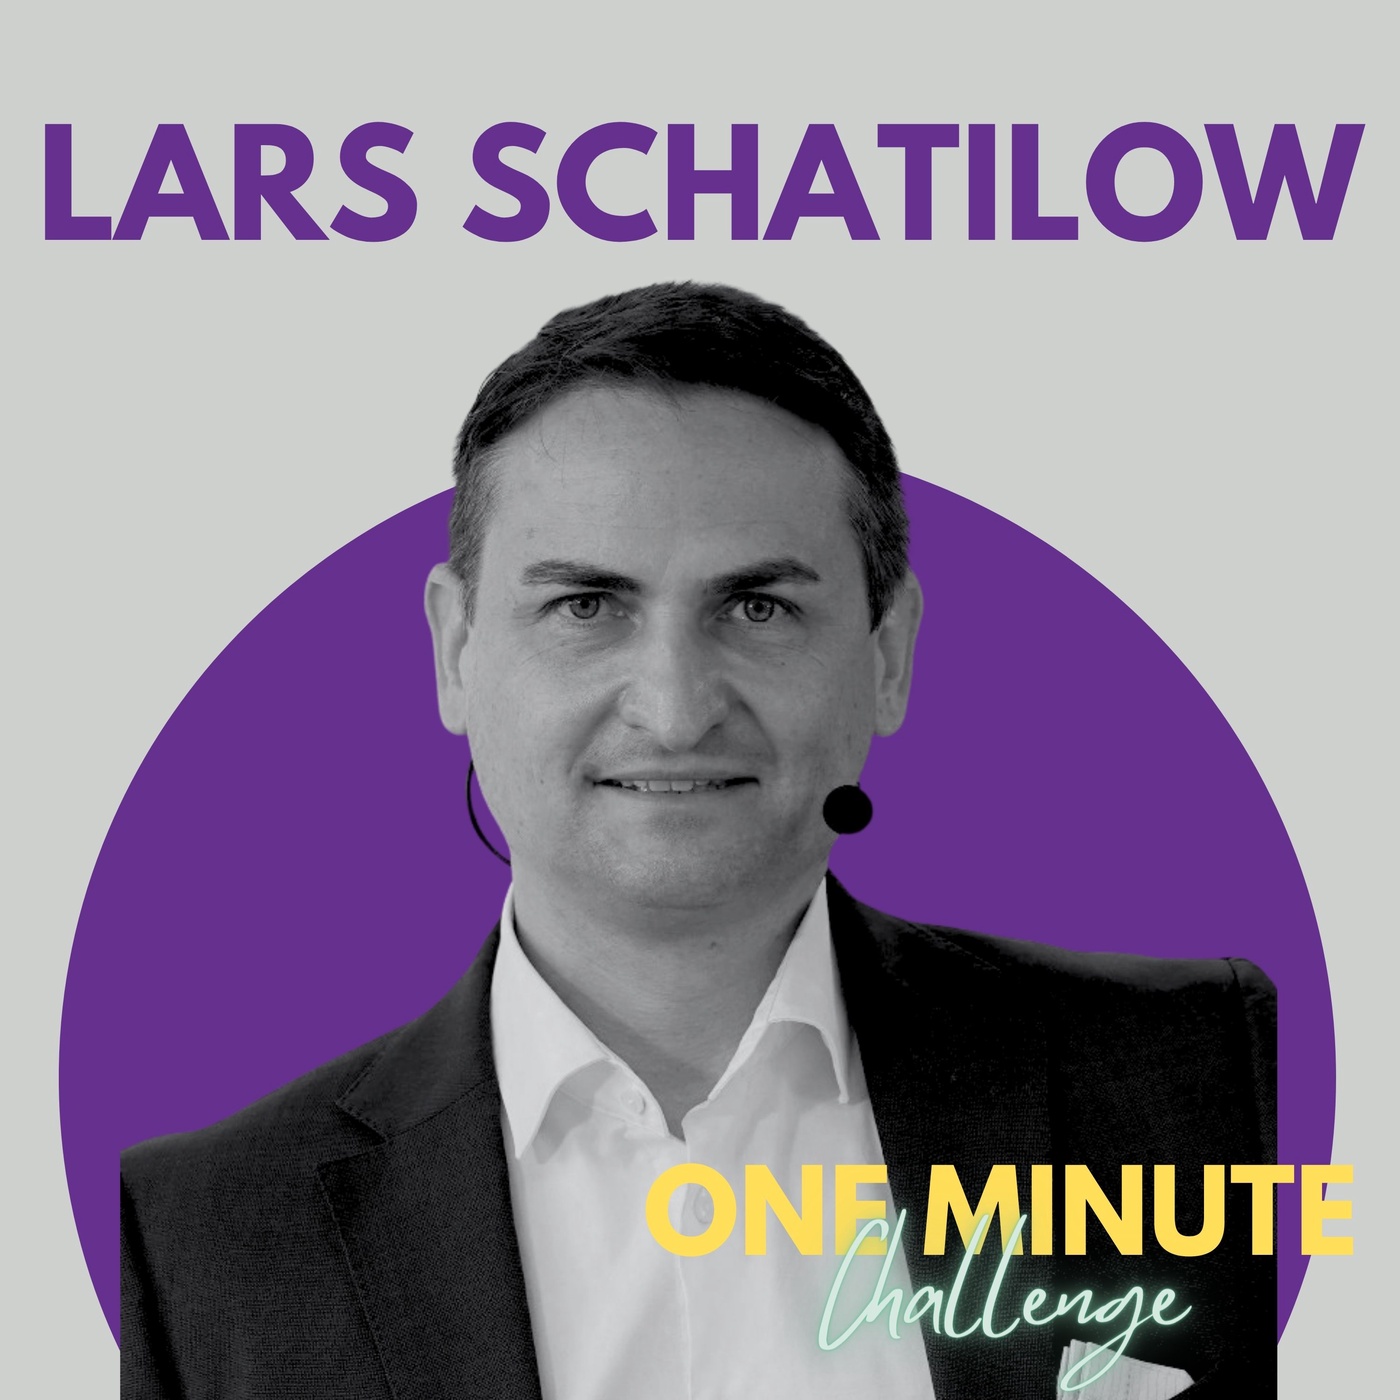 # 20 One Minute Challenge - Lars Schatilow